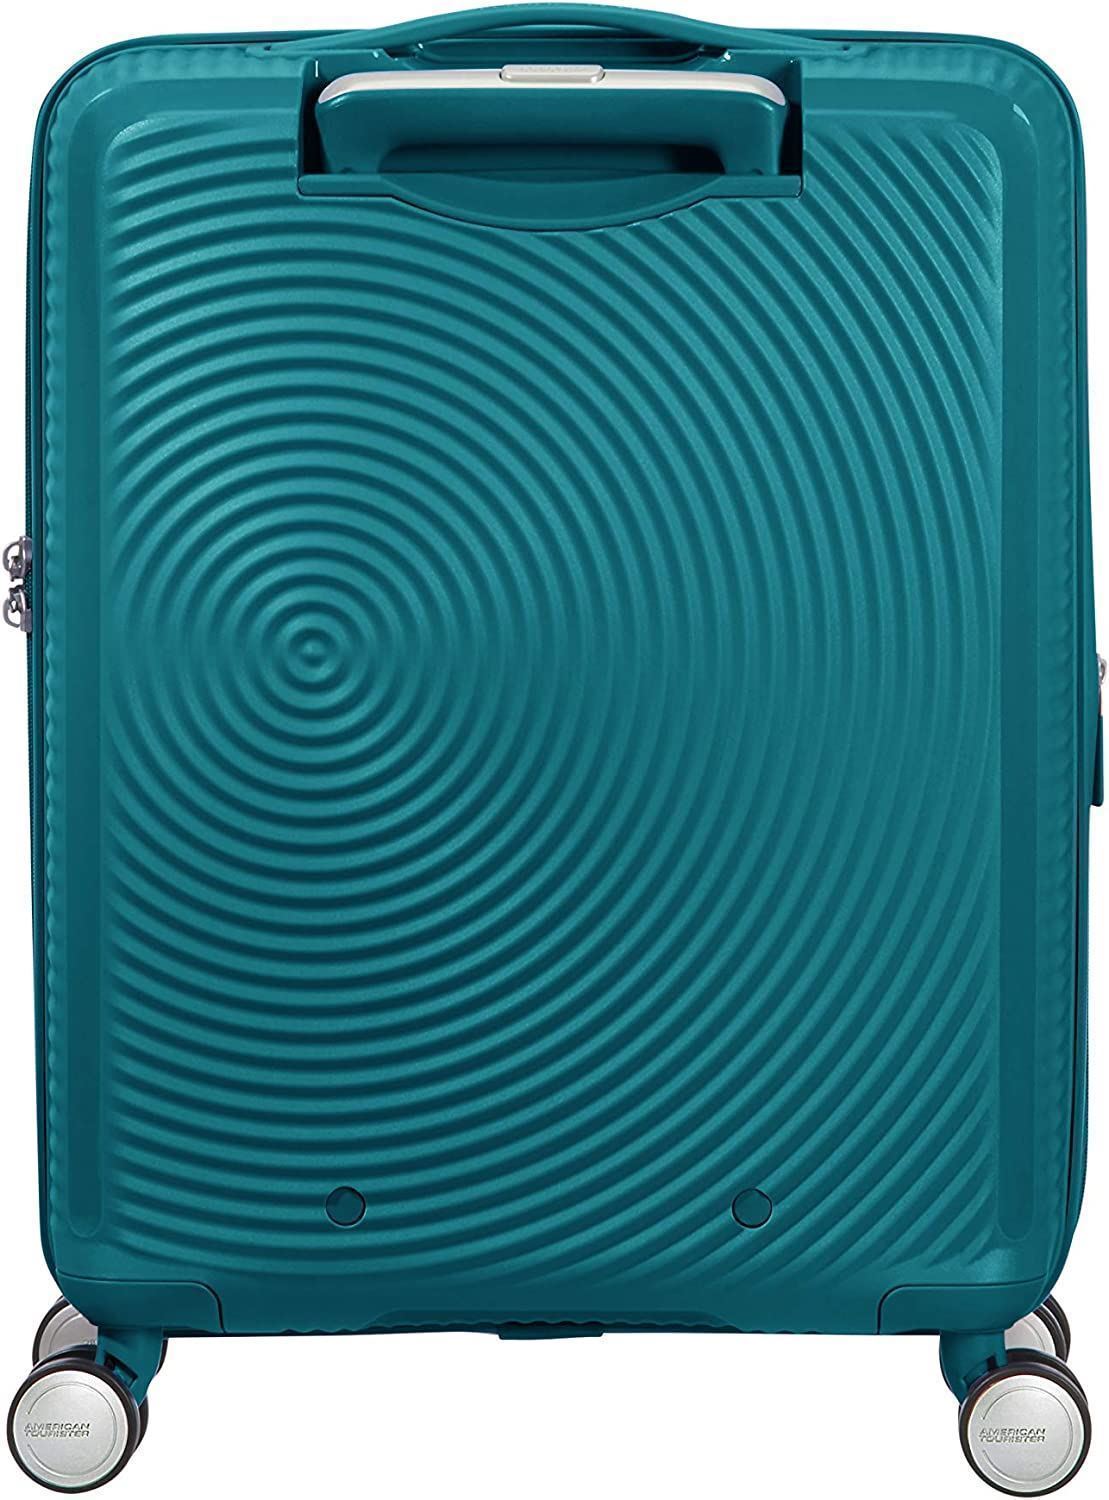 American Tourister Soundbox maleta cabina expandible Verde Jade 3 años de garantia - Imagen 2